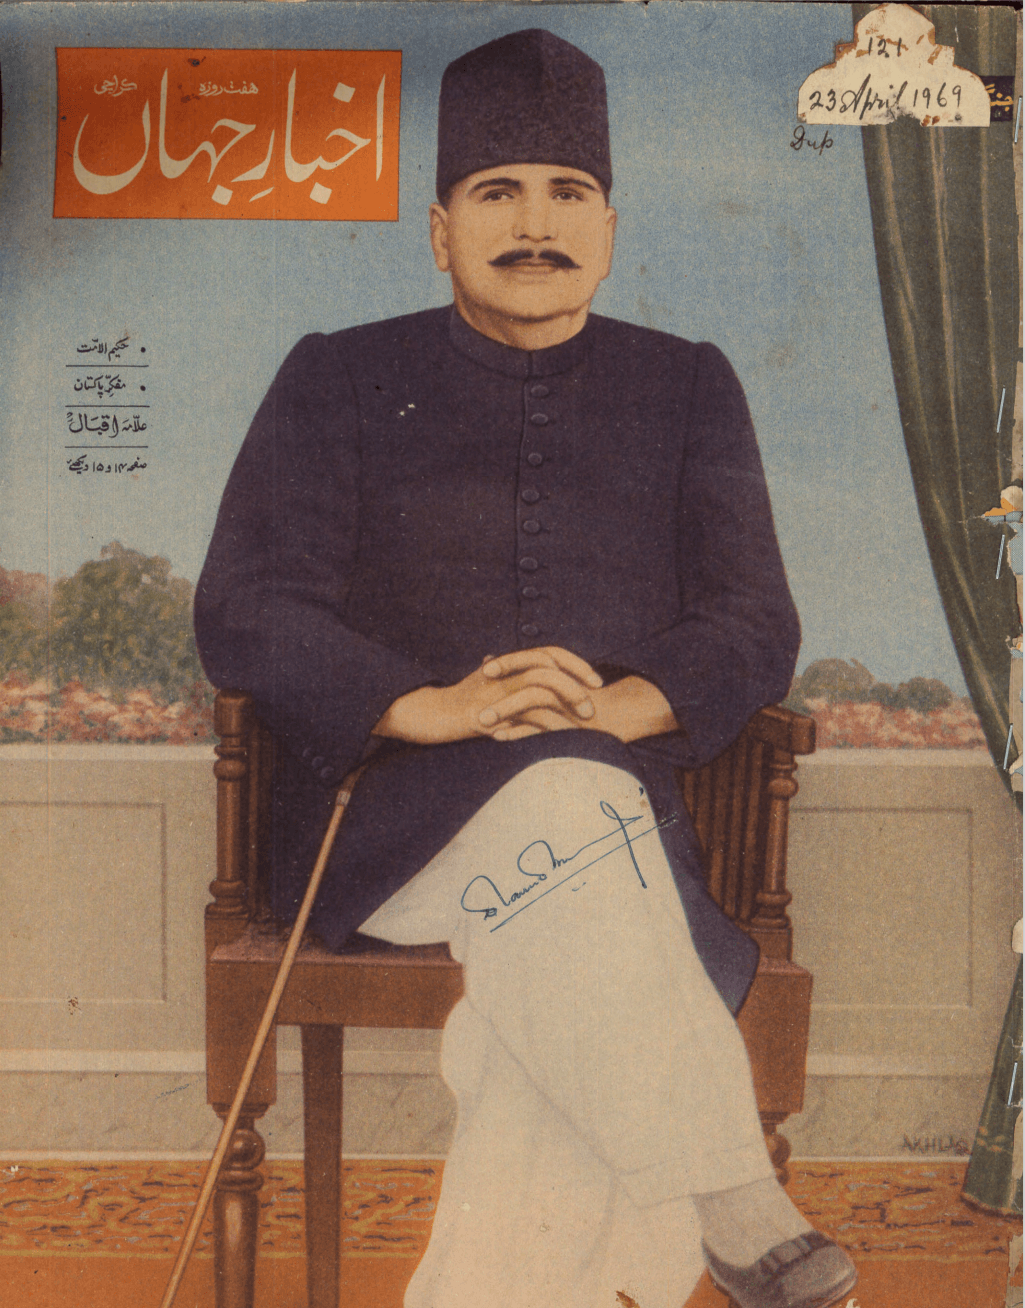 Akhbar-e-Jahan (April 23, 1969) - KHAJISTAN™